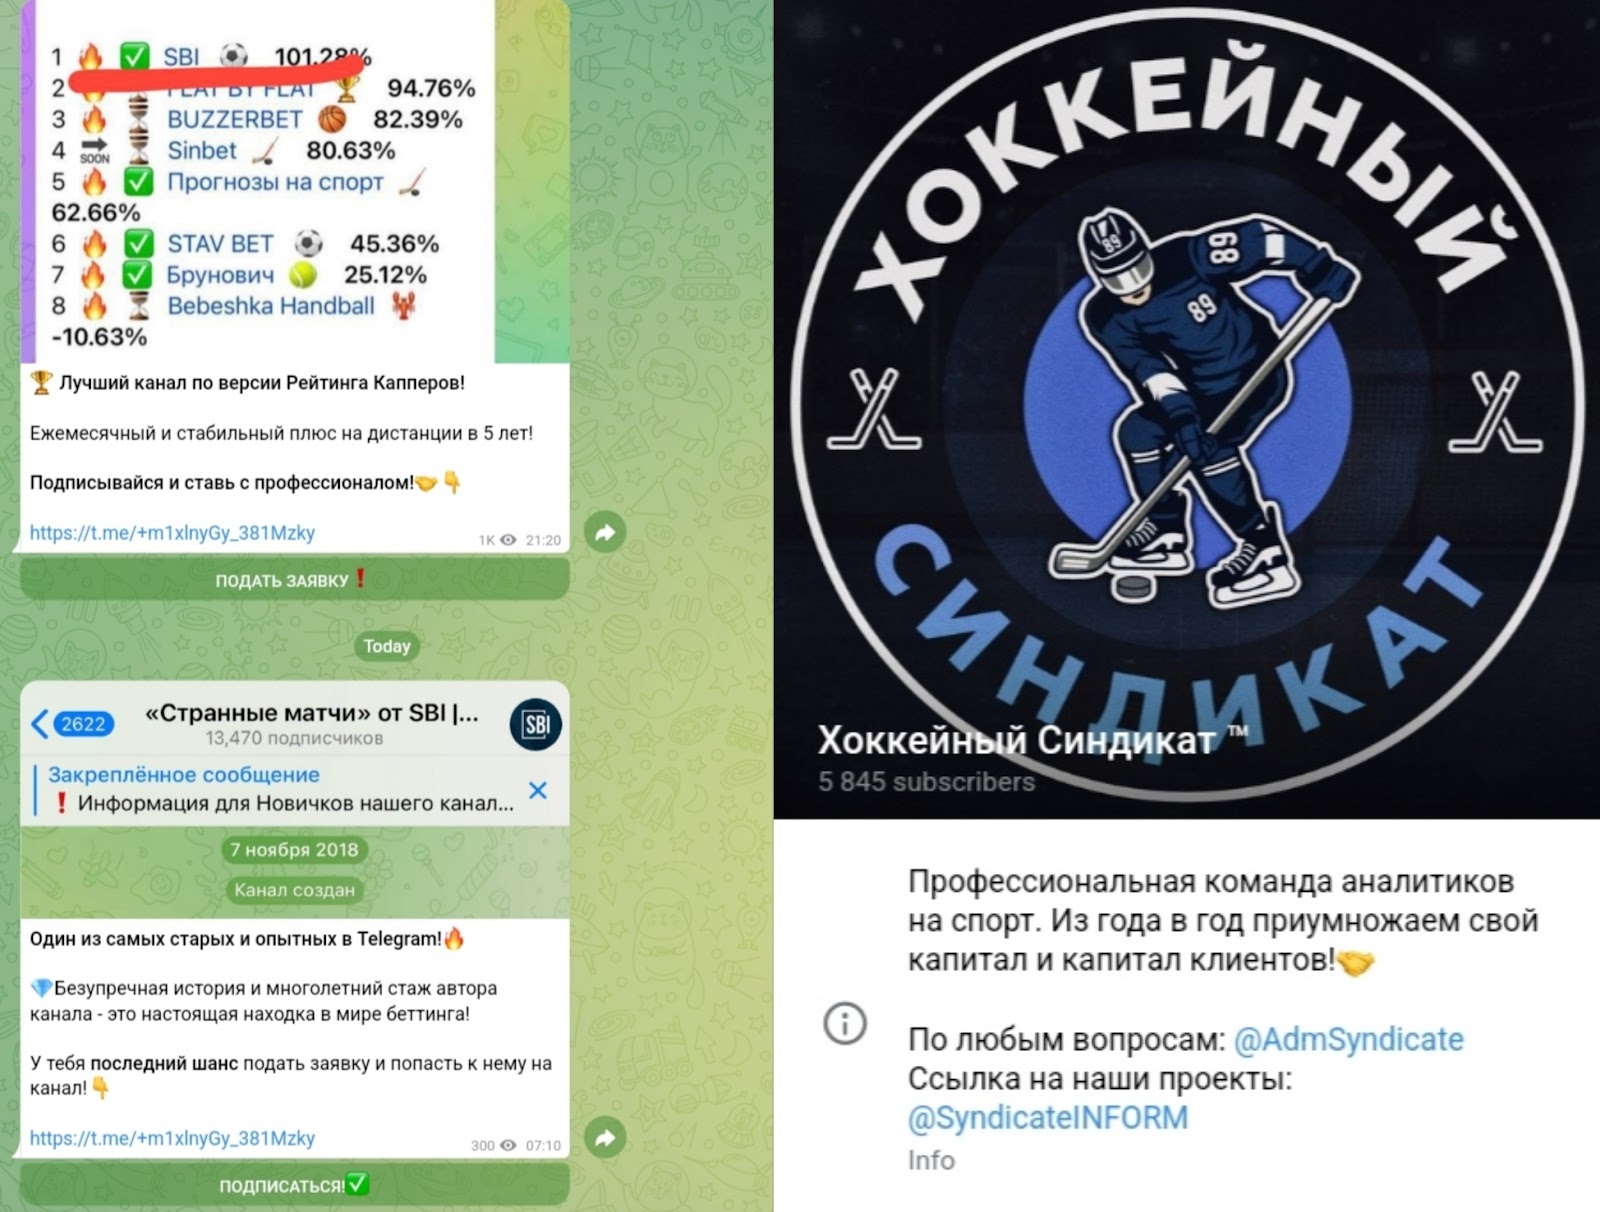 хоккейный синдикат отзывы телеграм